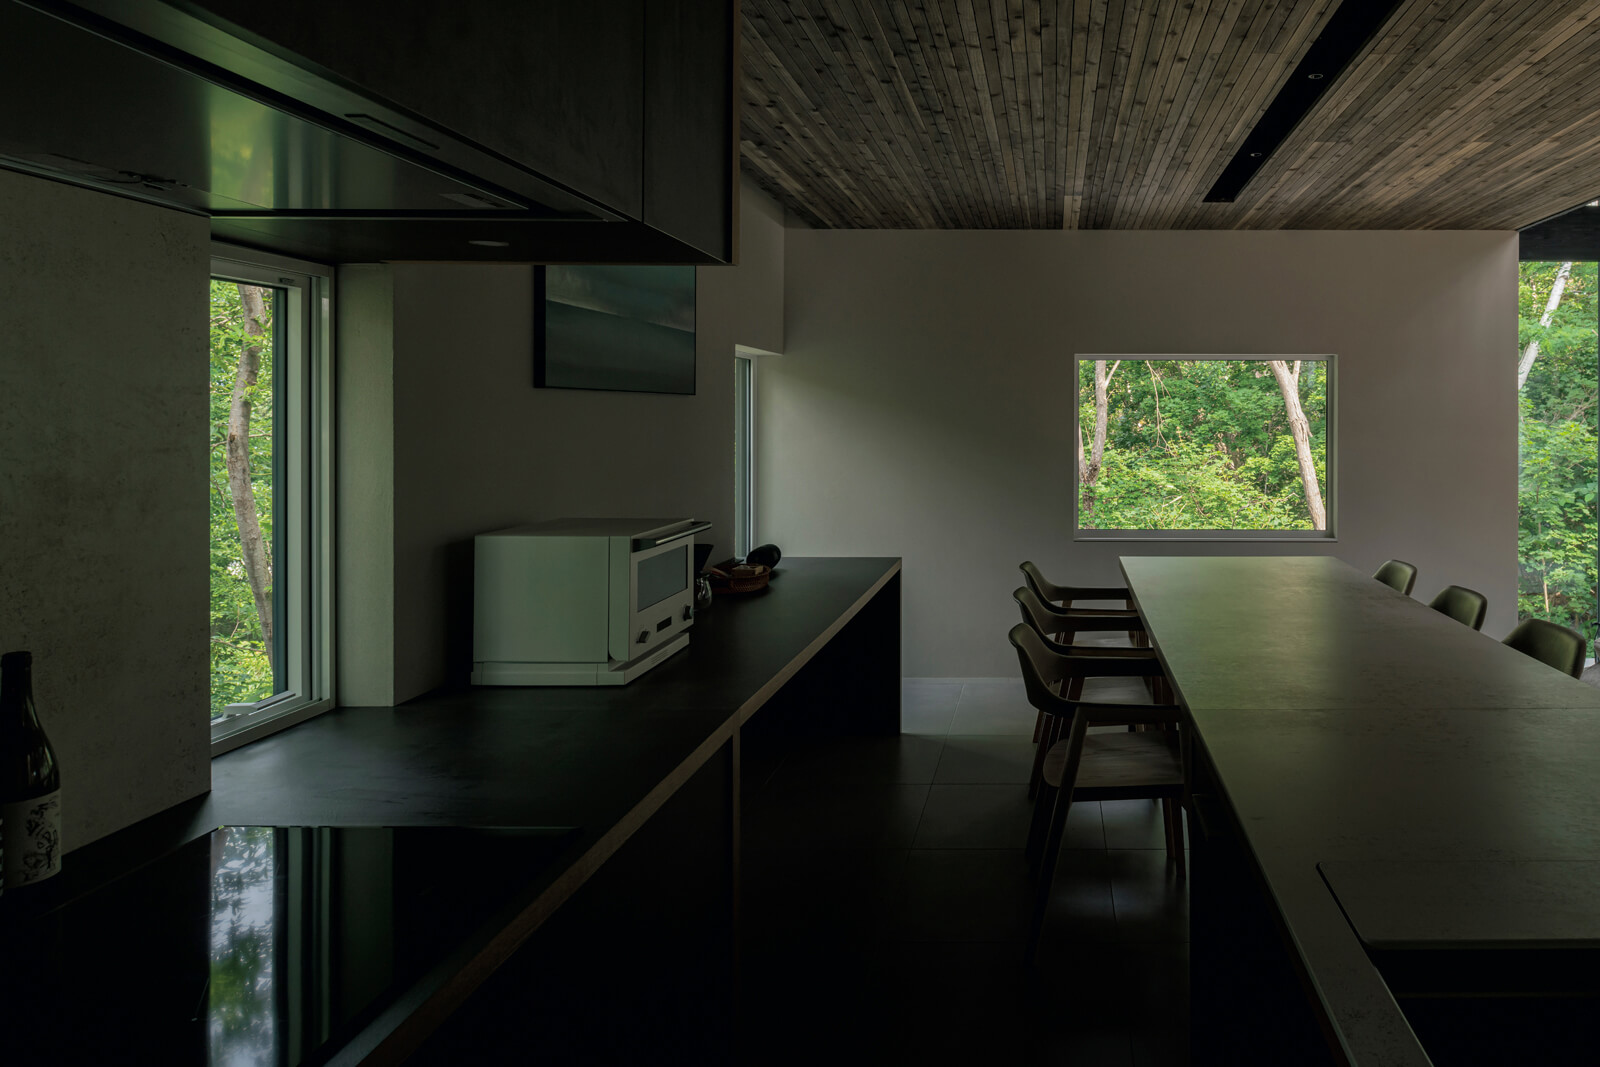 ダイニング・キッチンスペースは窓の高さを抑え、豊かな景色を十分に取り入れながらも落ち着きのある空間に